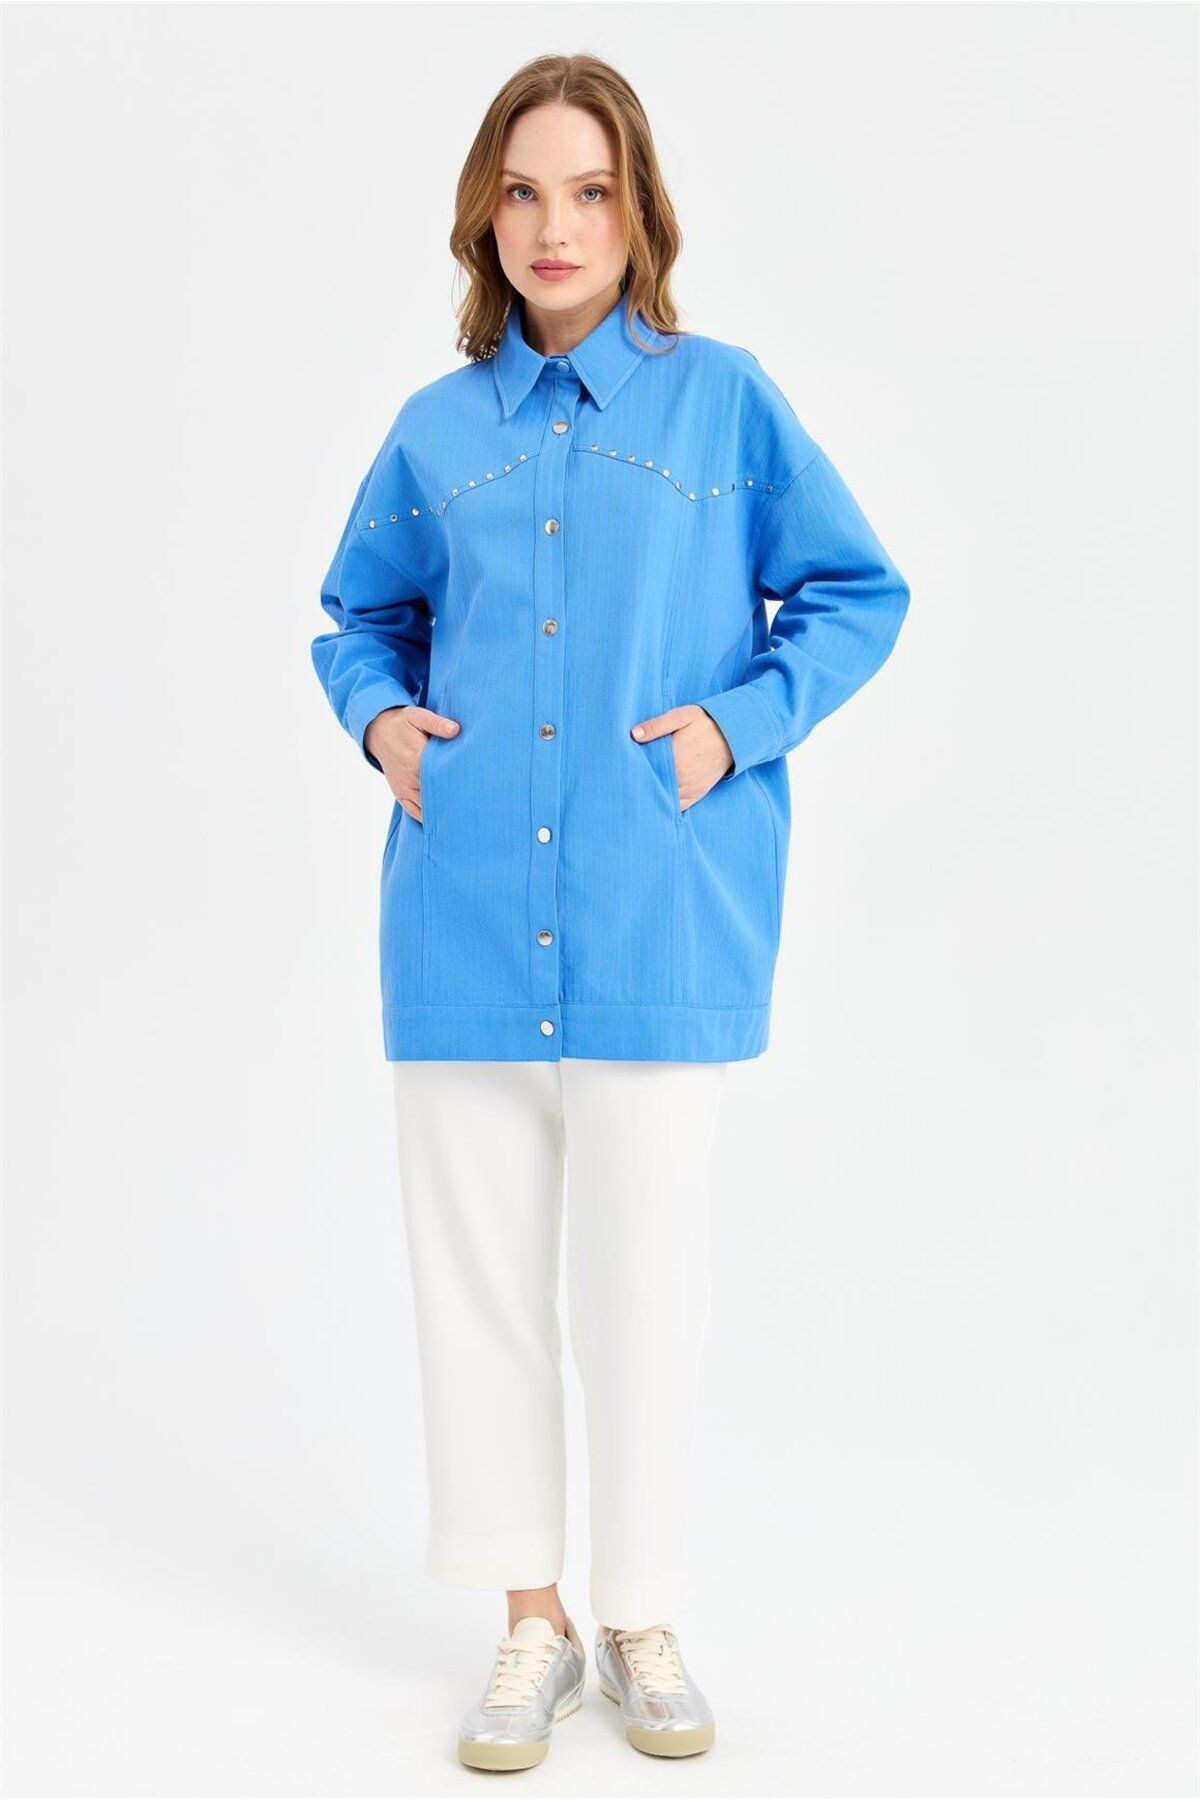 Esswaap Robası Zımba Detaylı Ceket Tunik  Mavi